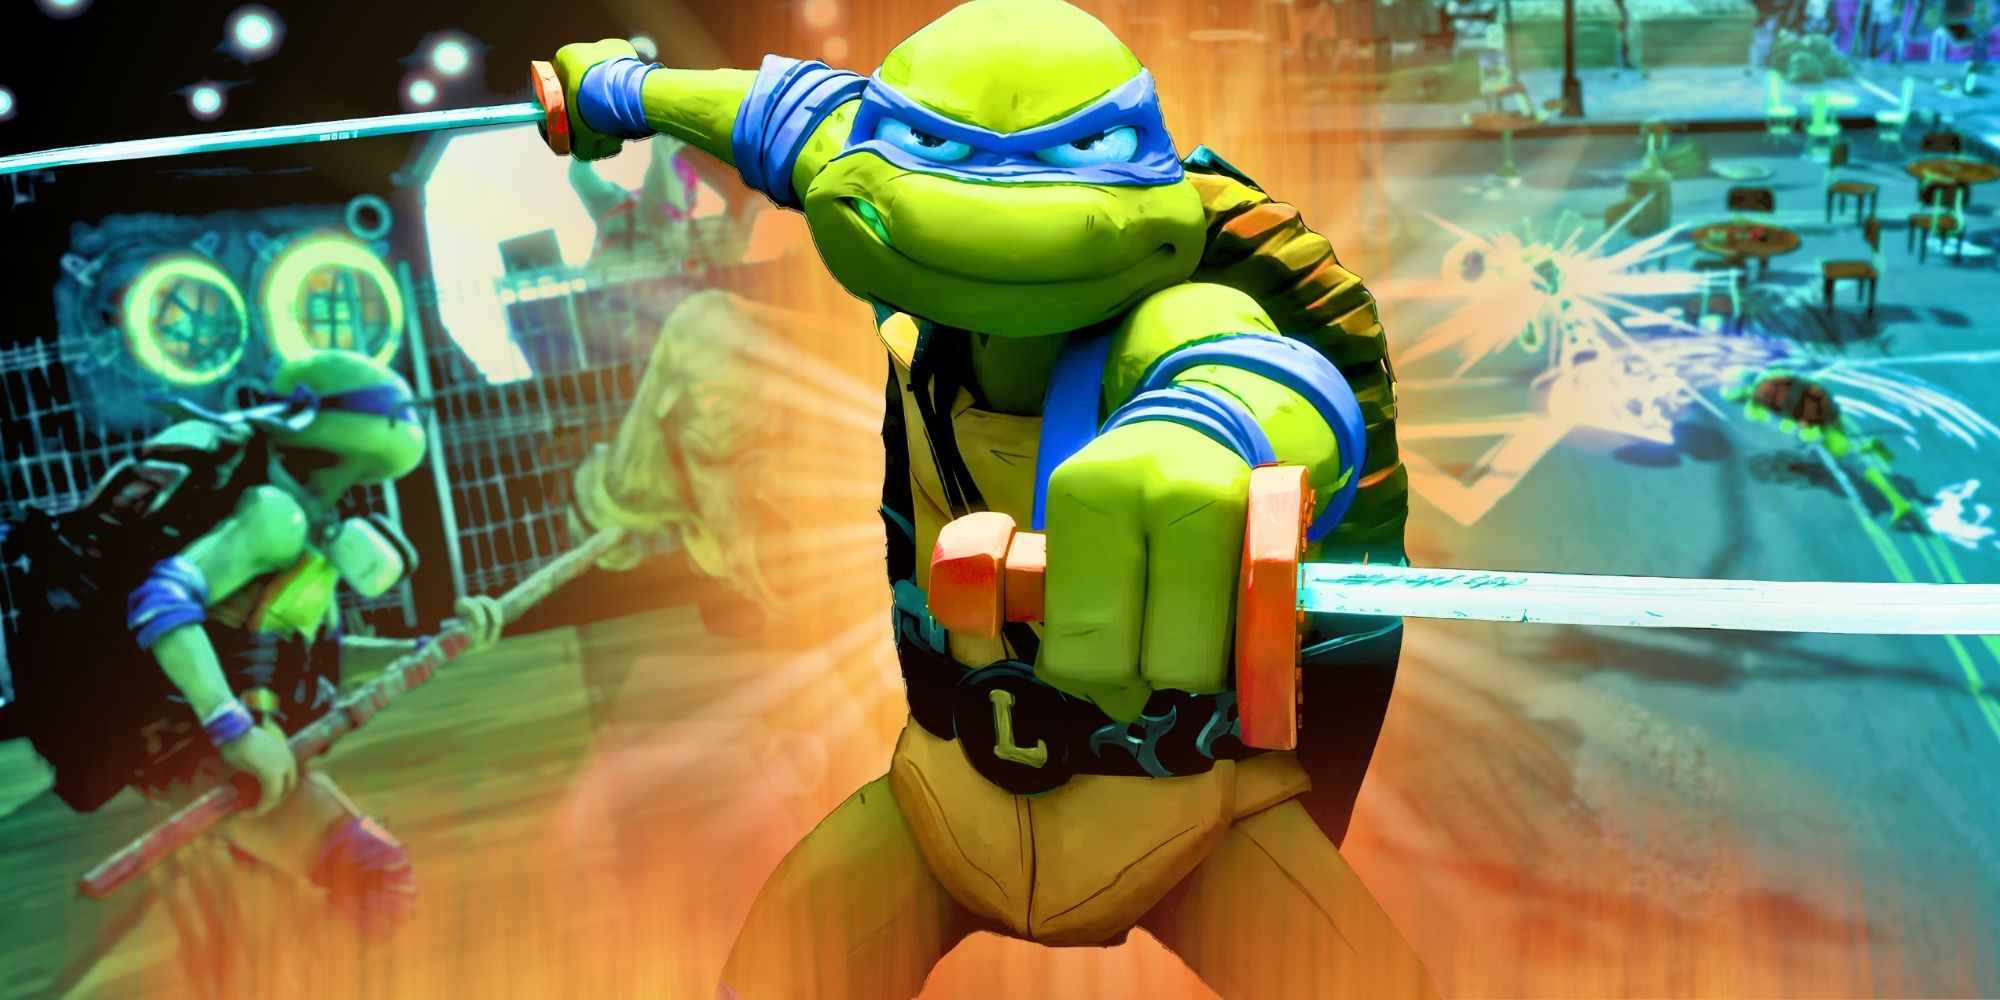 Teenage Mutant Ninja Turtles: Mutants Unleashed – Historia, jugabilidad y ventana de lanzamiento